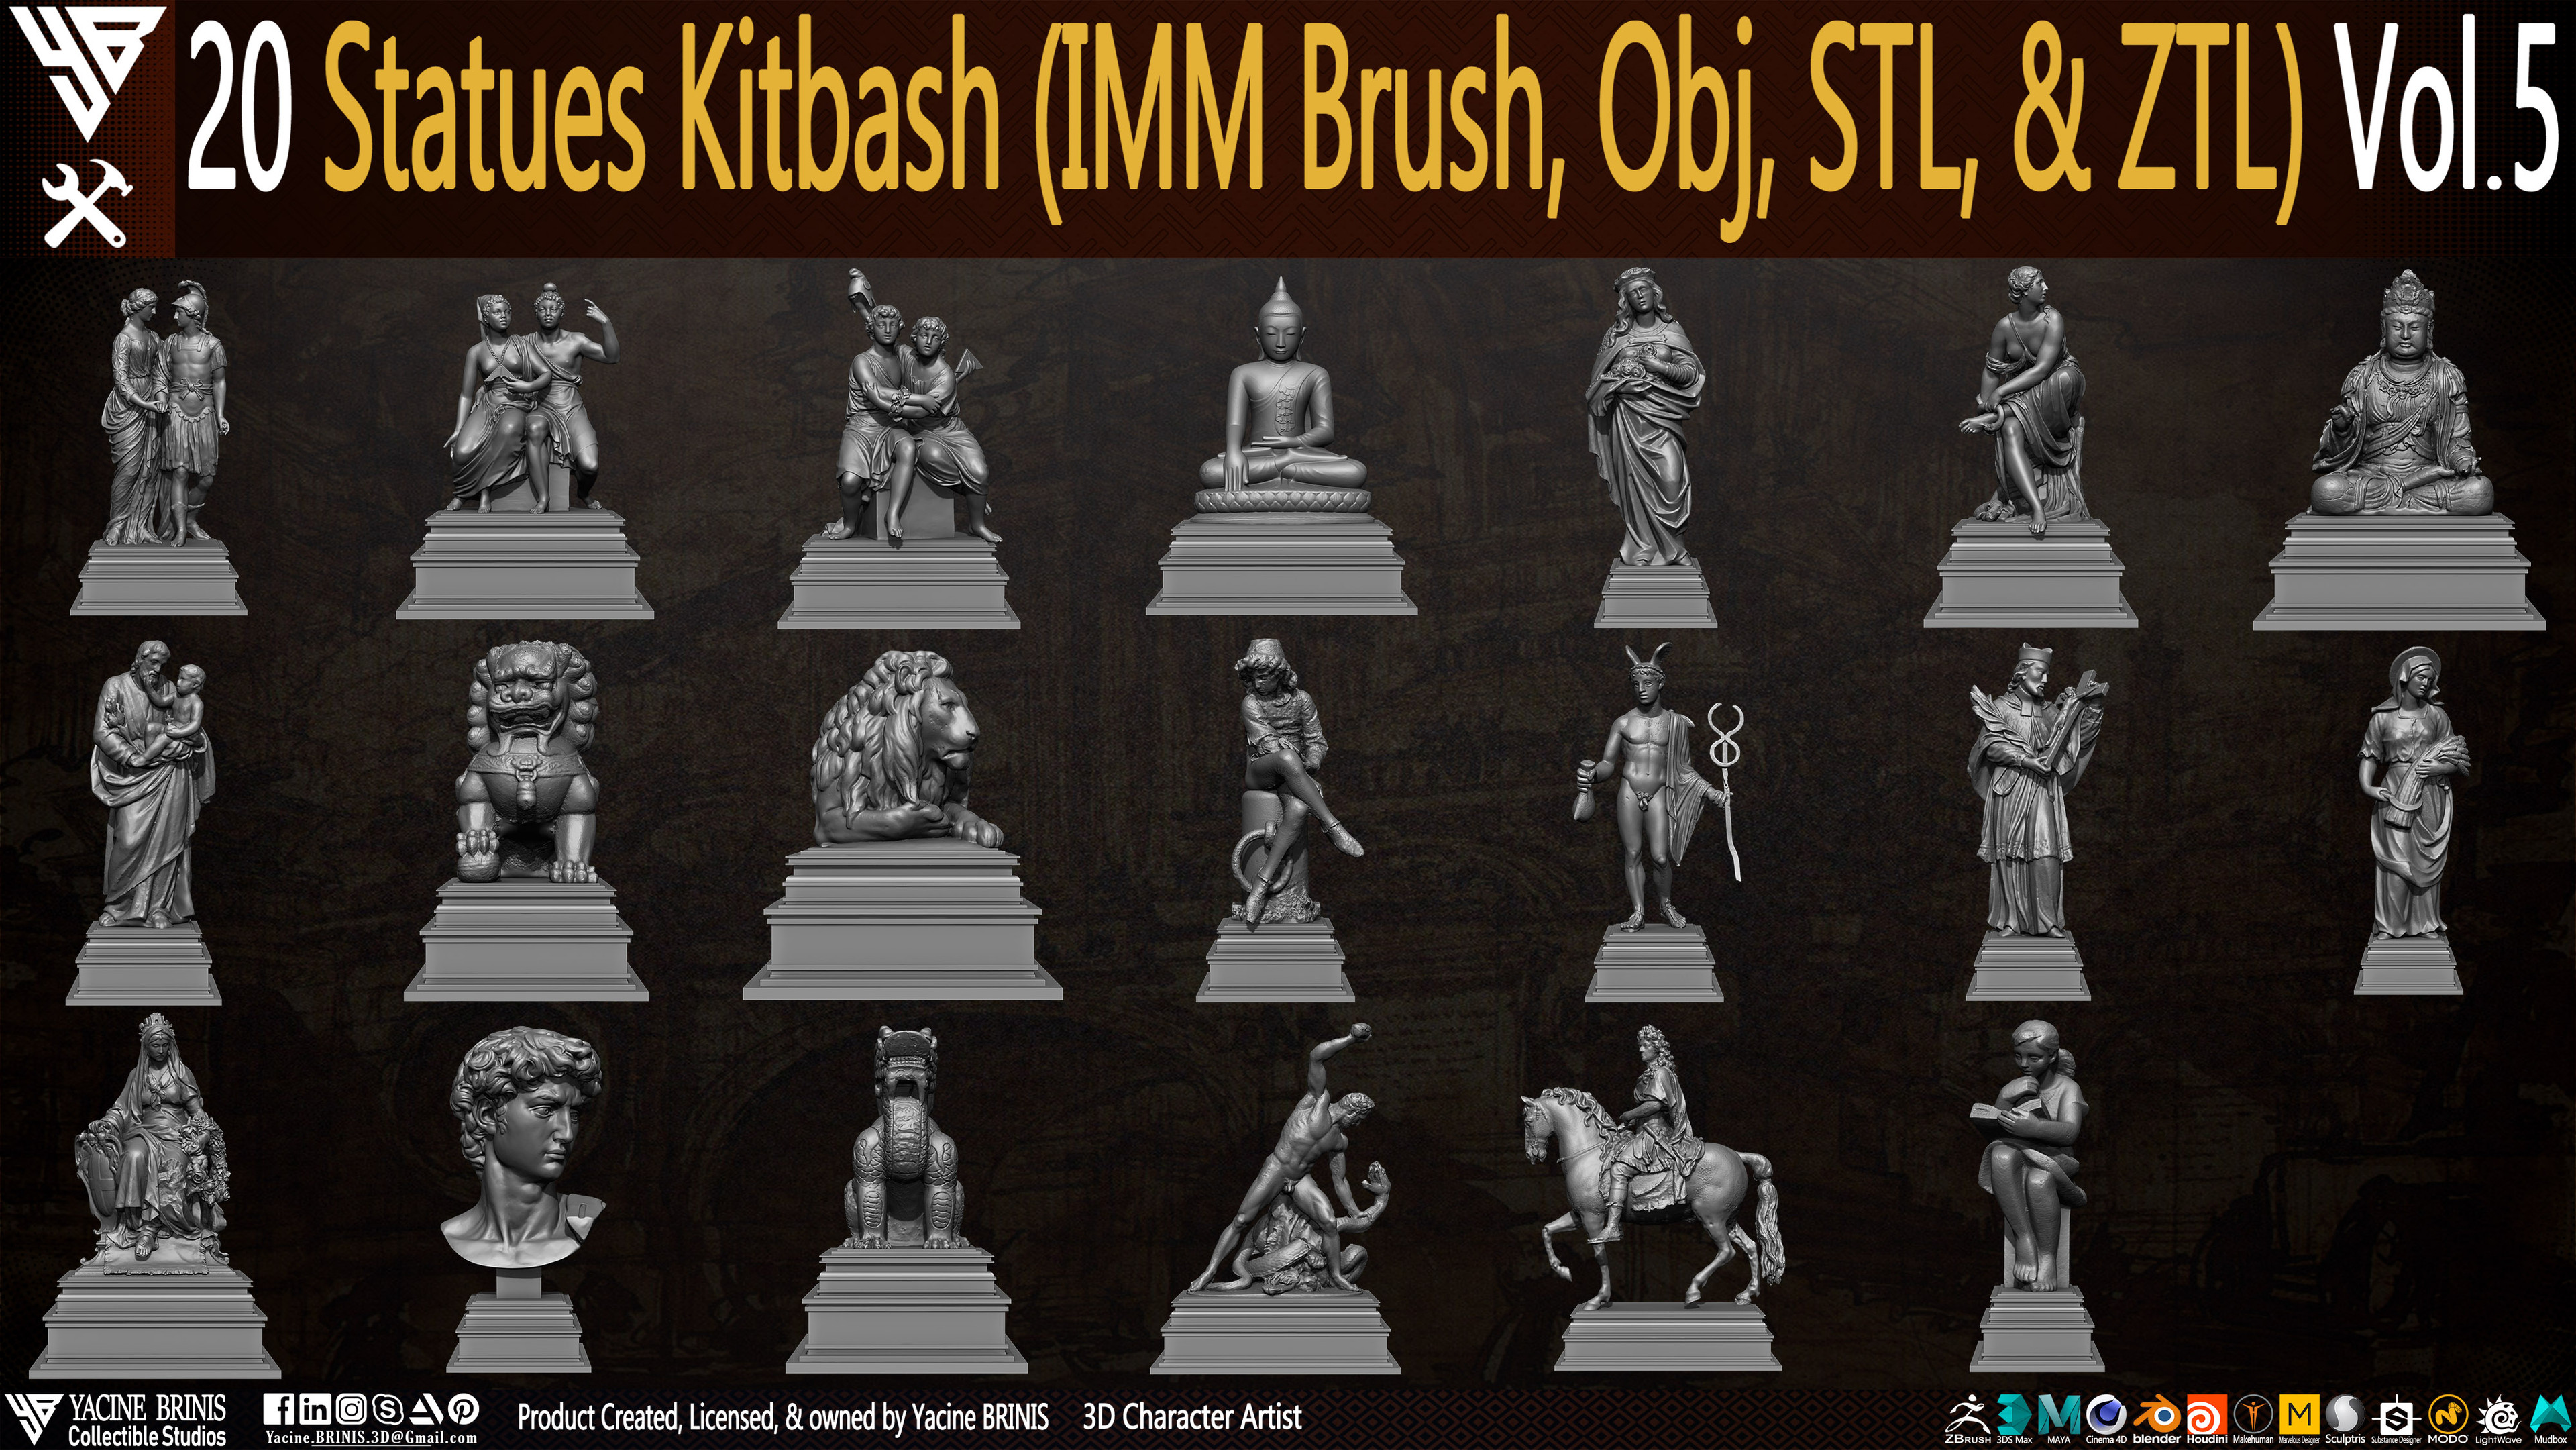 Statues Kitbash by yacine brinis Set 30